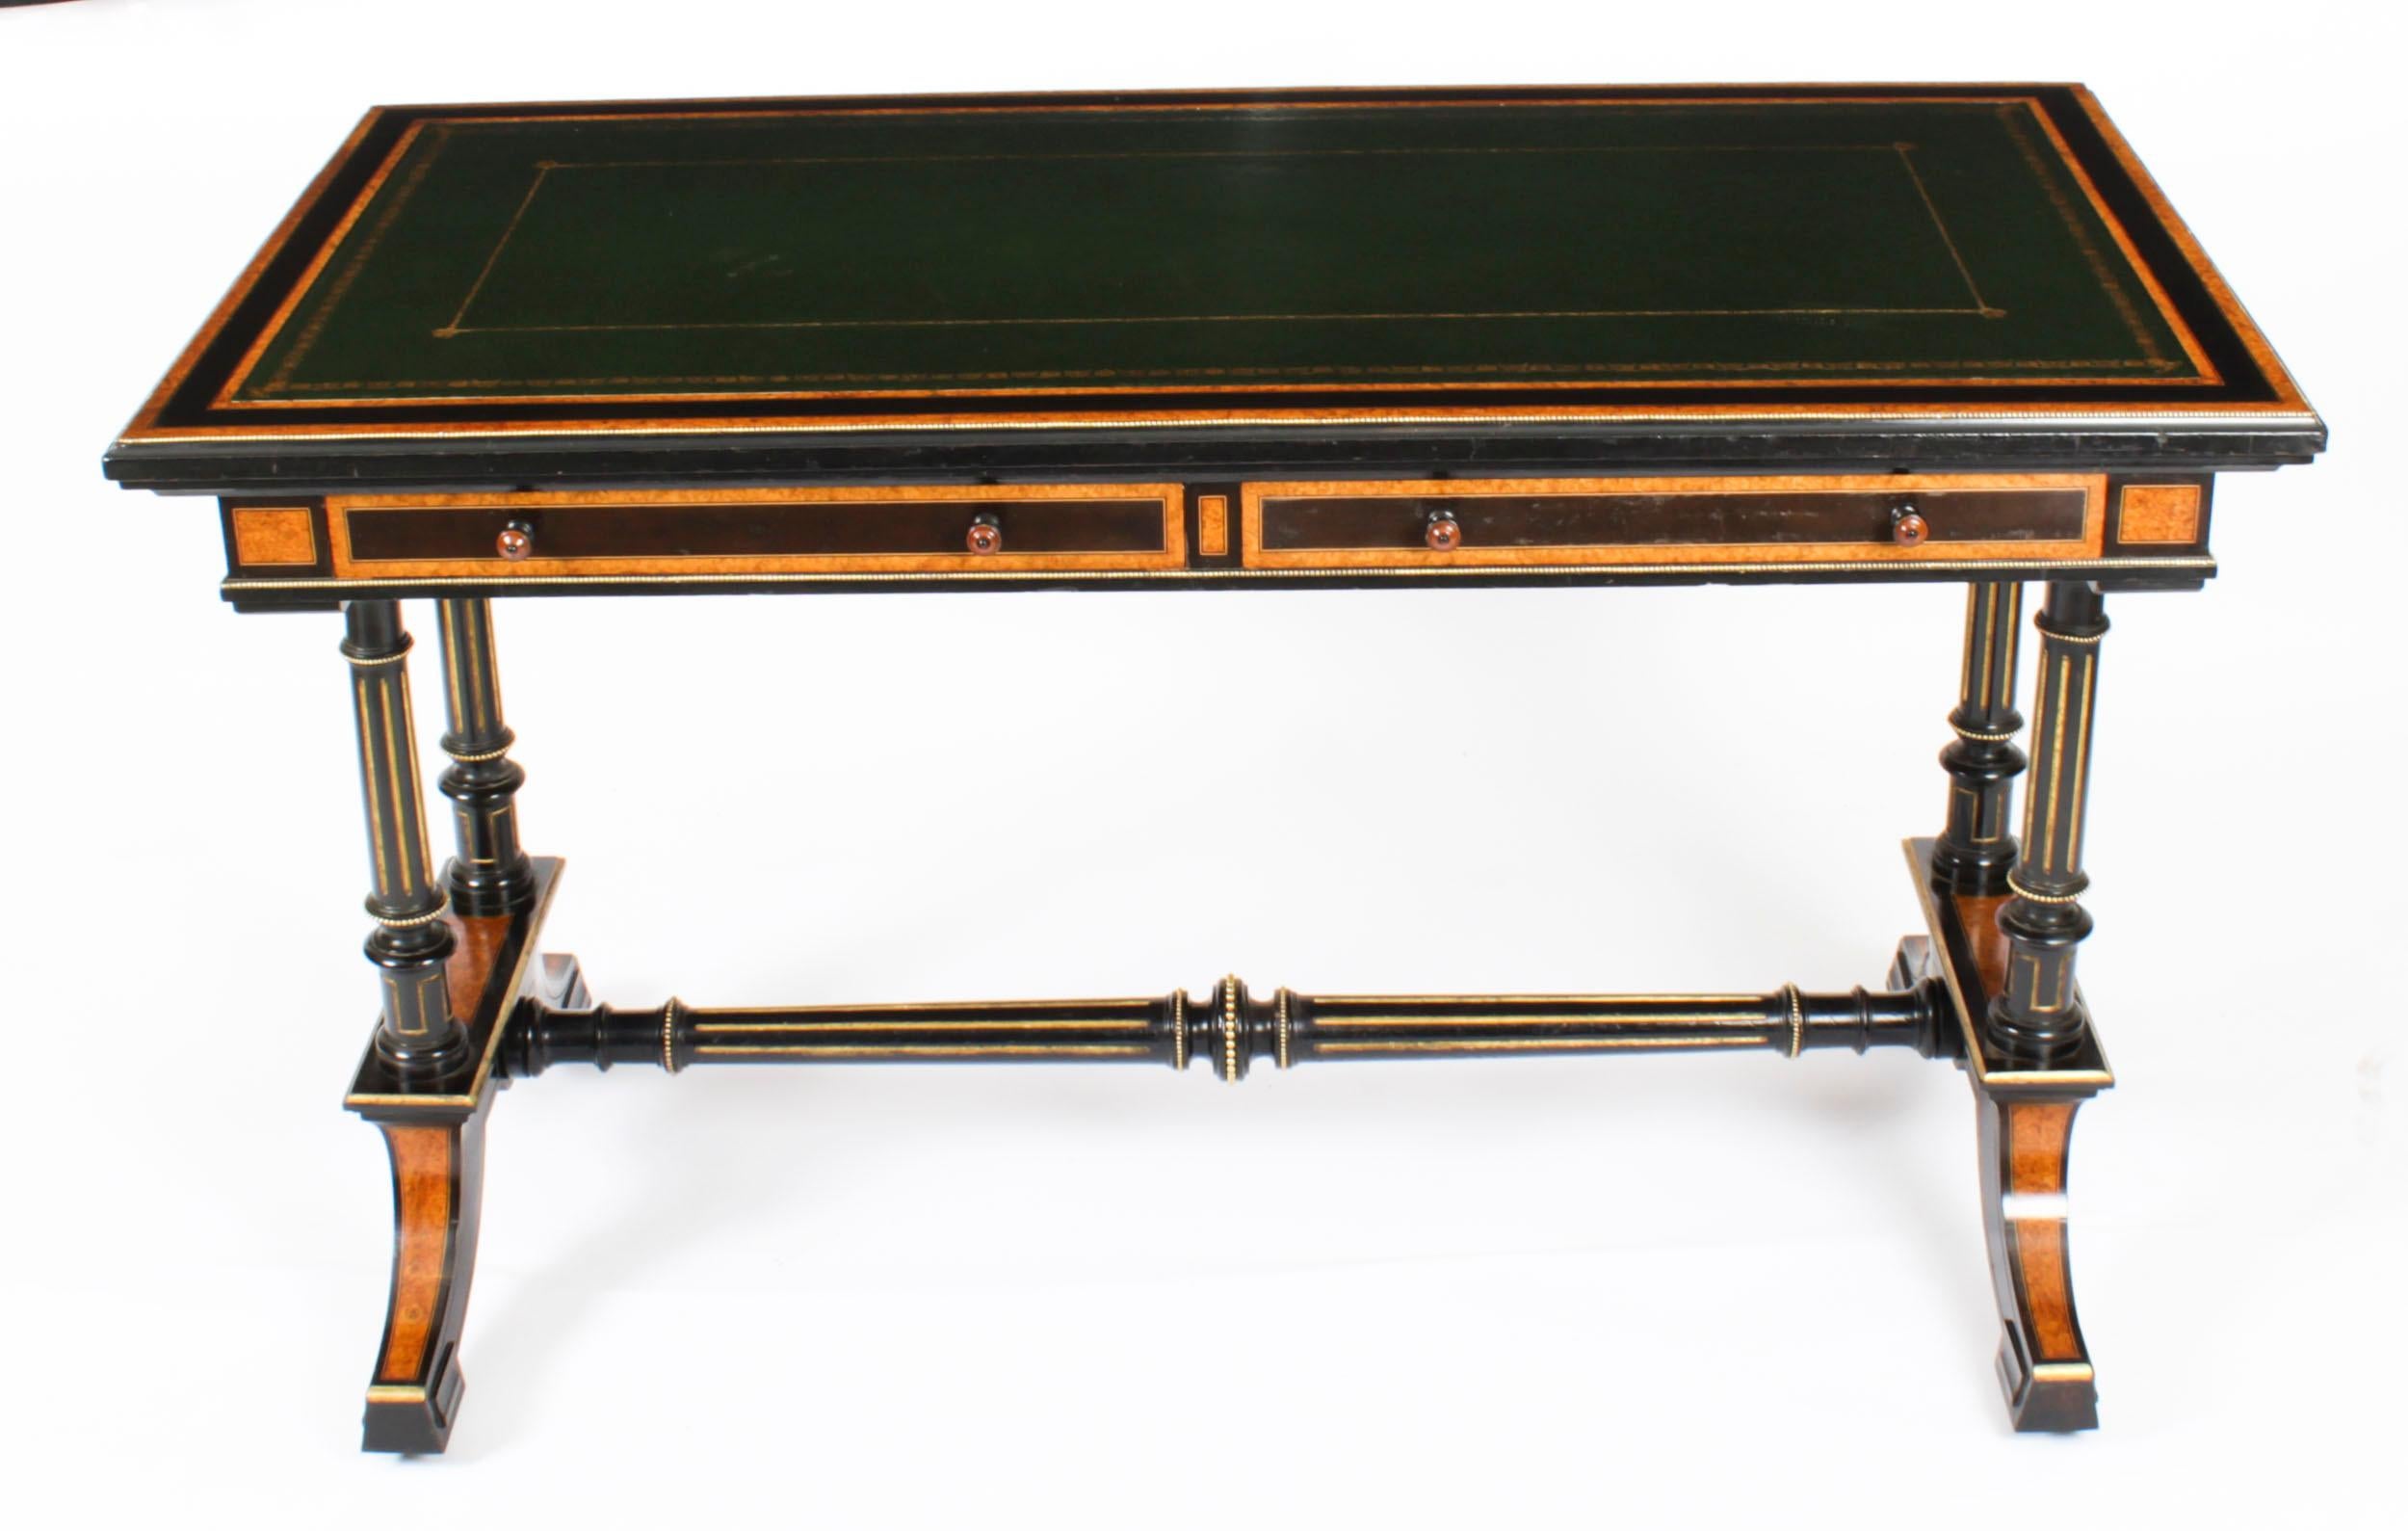 Il s'agit d'une élégante table à écrire d'époque esthétique en loupe d'érable et ébonite, estampillée 'Edwards & Roberts', datée d'environ 1870.
 
Cet élégant bureau est fabriqué dans le plus beau des érables avec un décor de bandes d'ébène et de